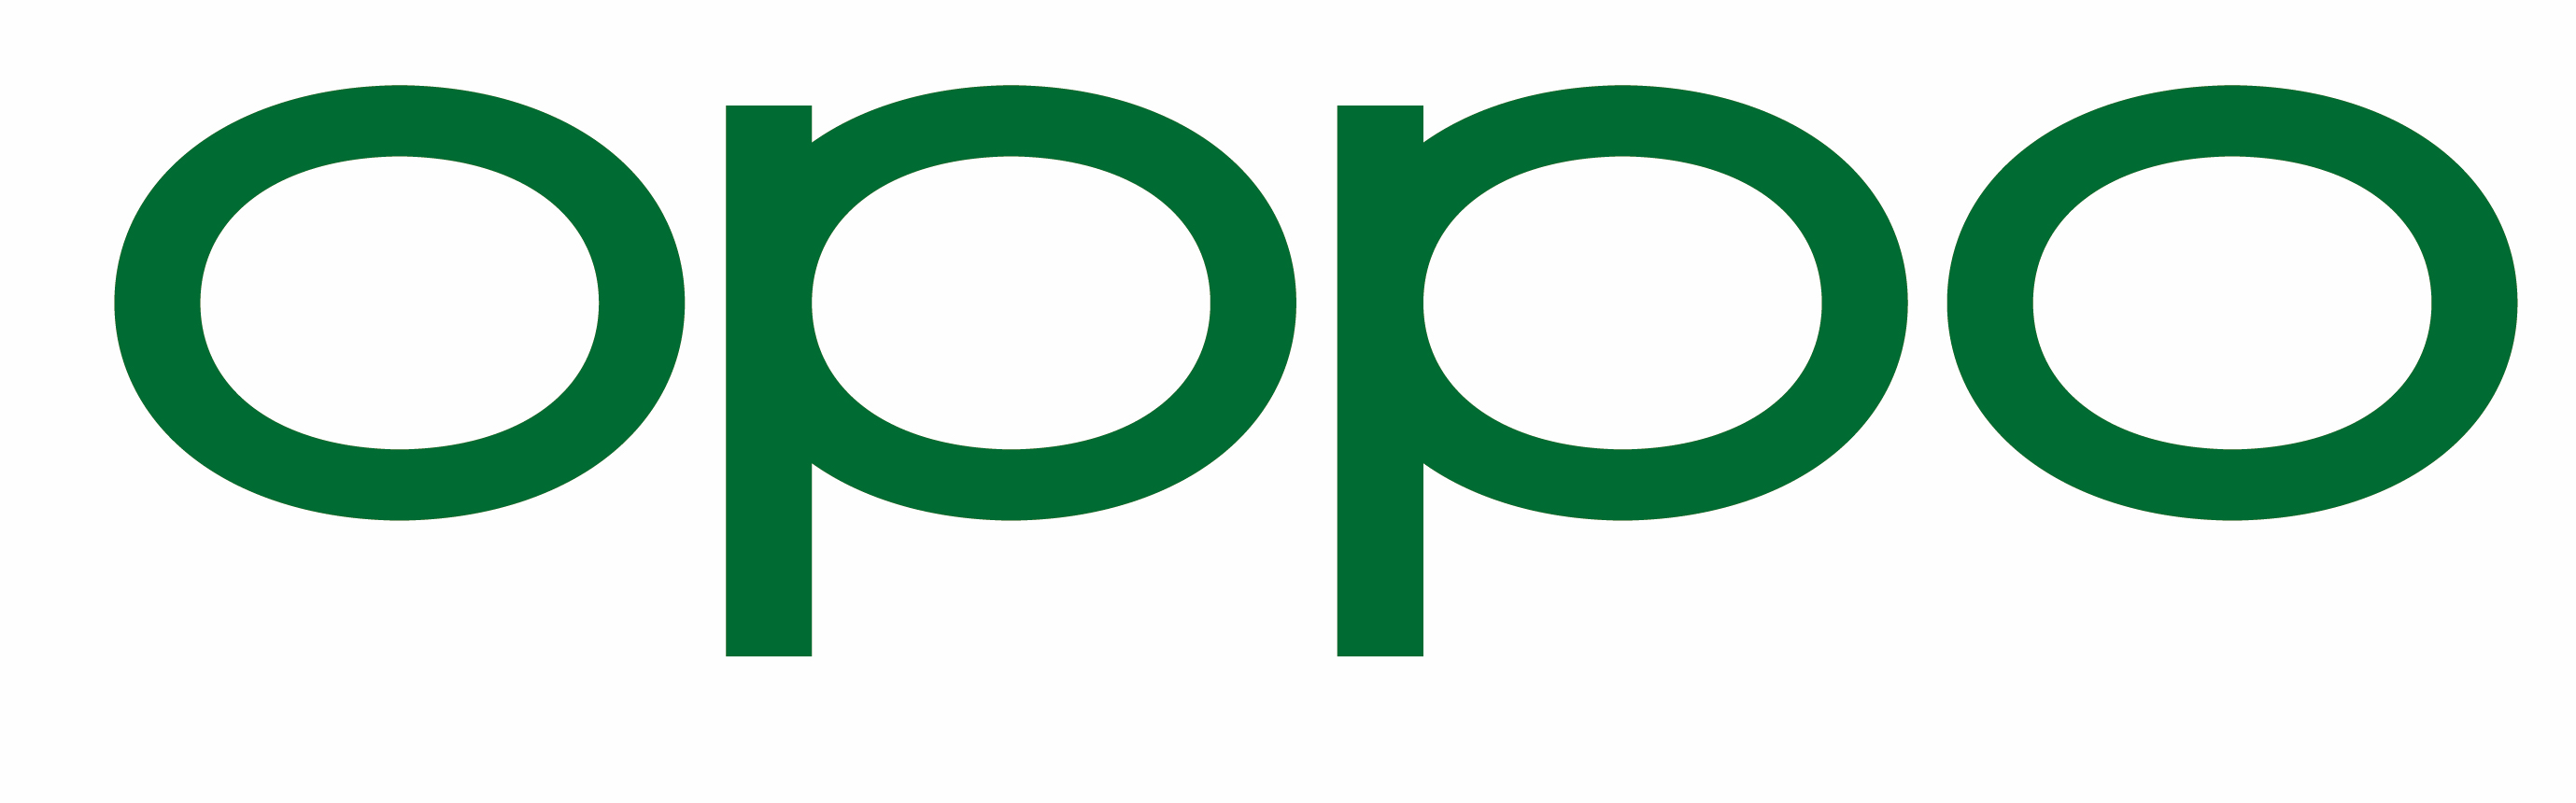 OPPO Logo File